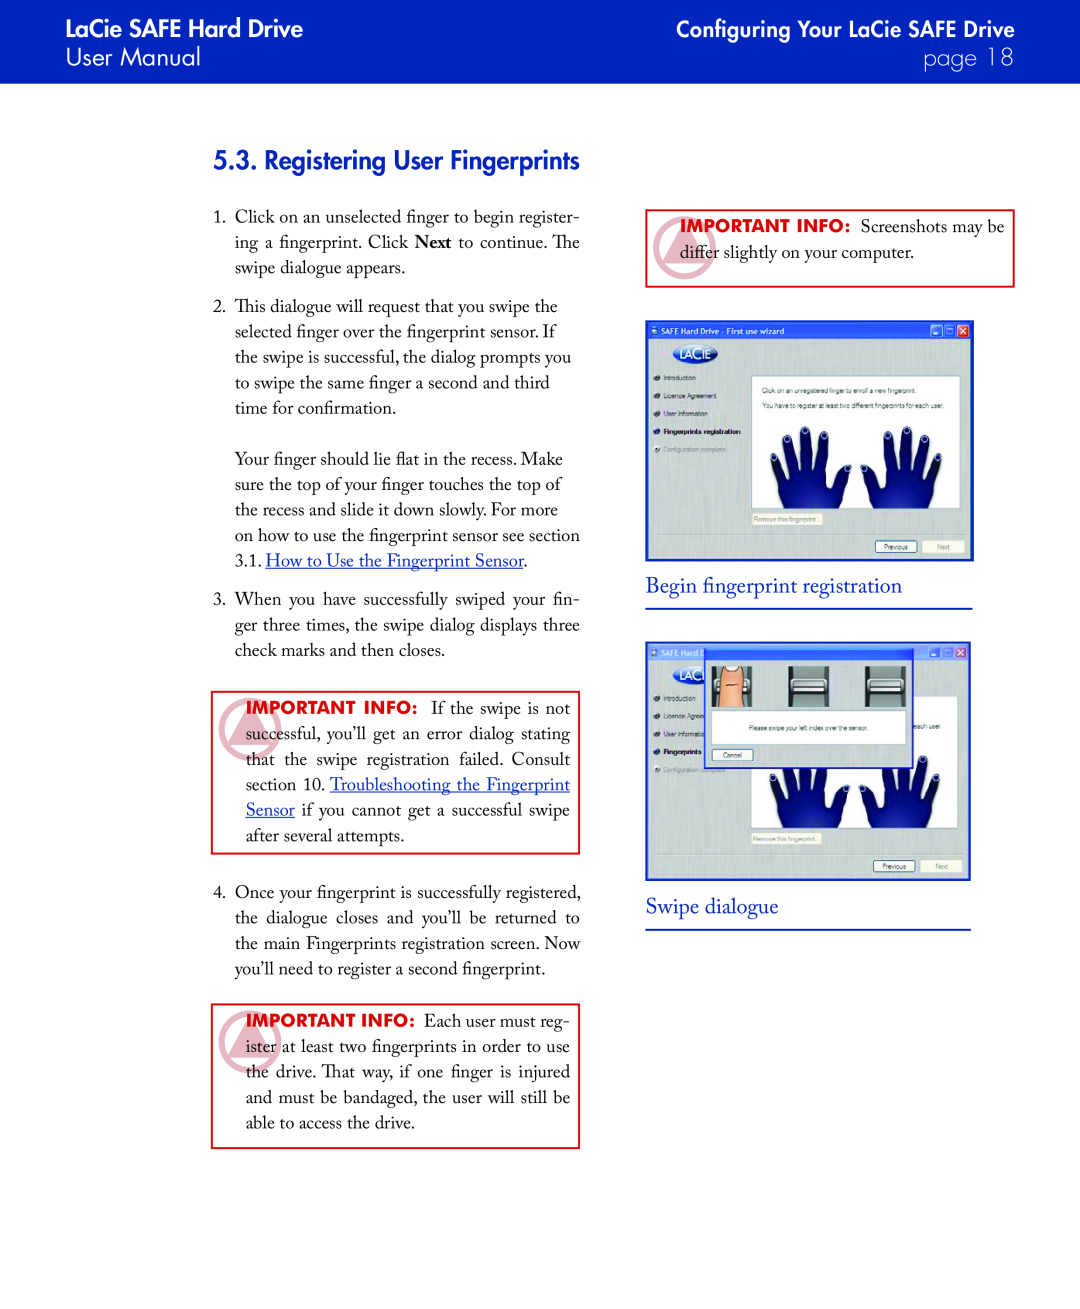 LaCie Registering User Fingerprints, Begin fingerprint registration Swipe dialogue, LaCie SAFE Hard Drive User Manual 